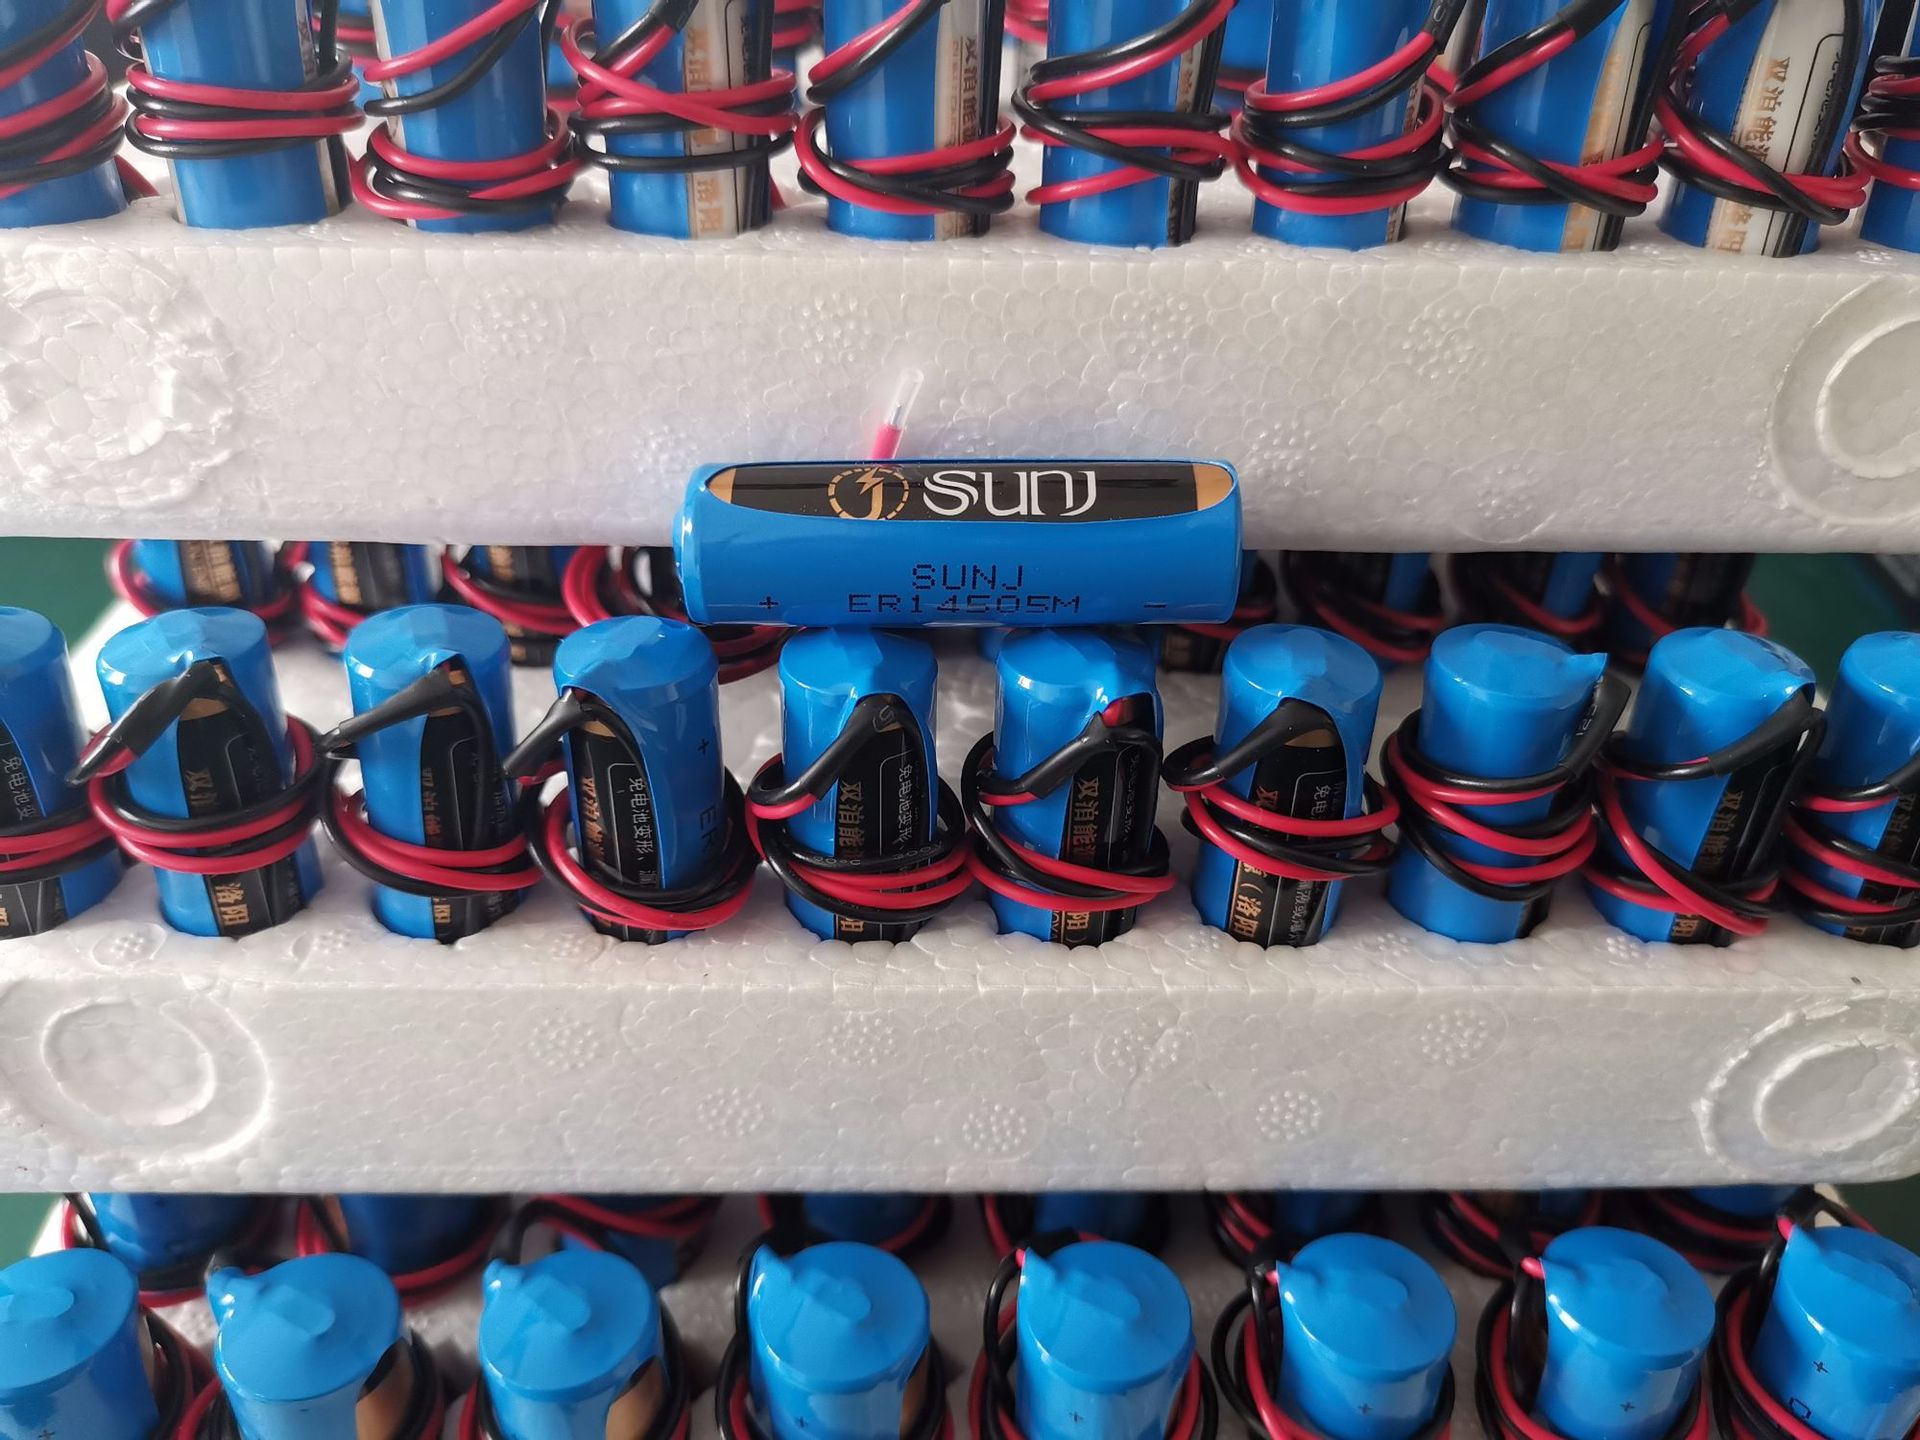 SUNJ 3.6v锂电池 ER14505M图片